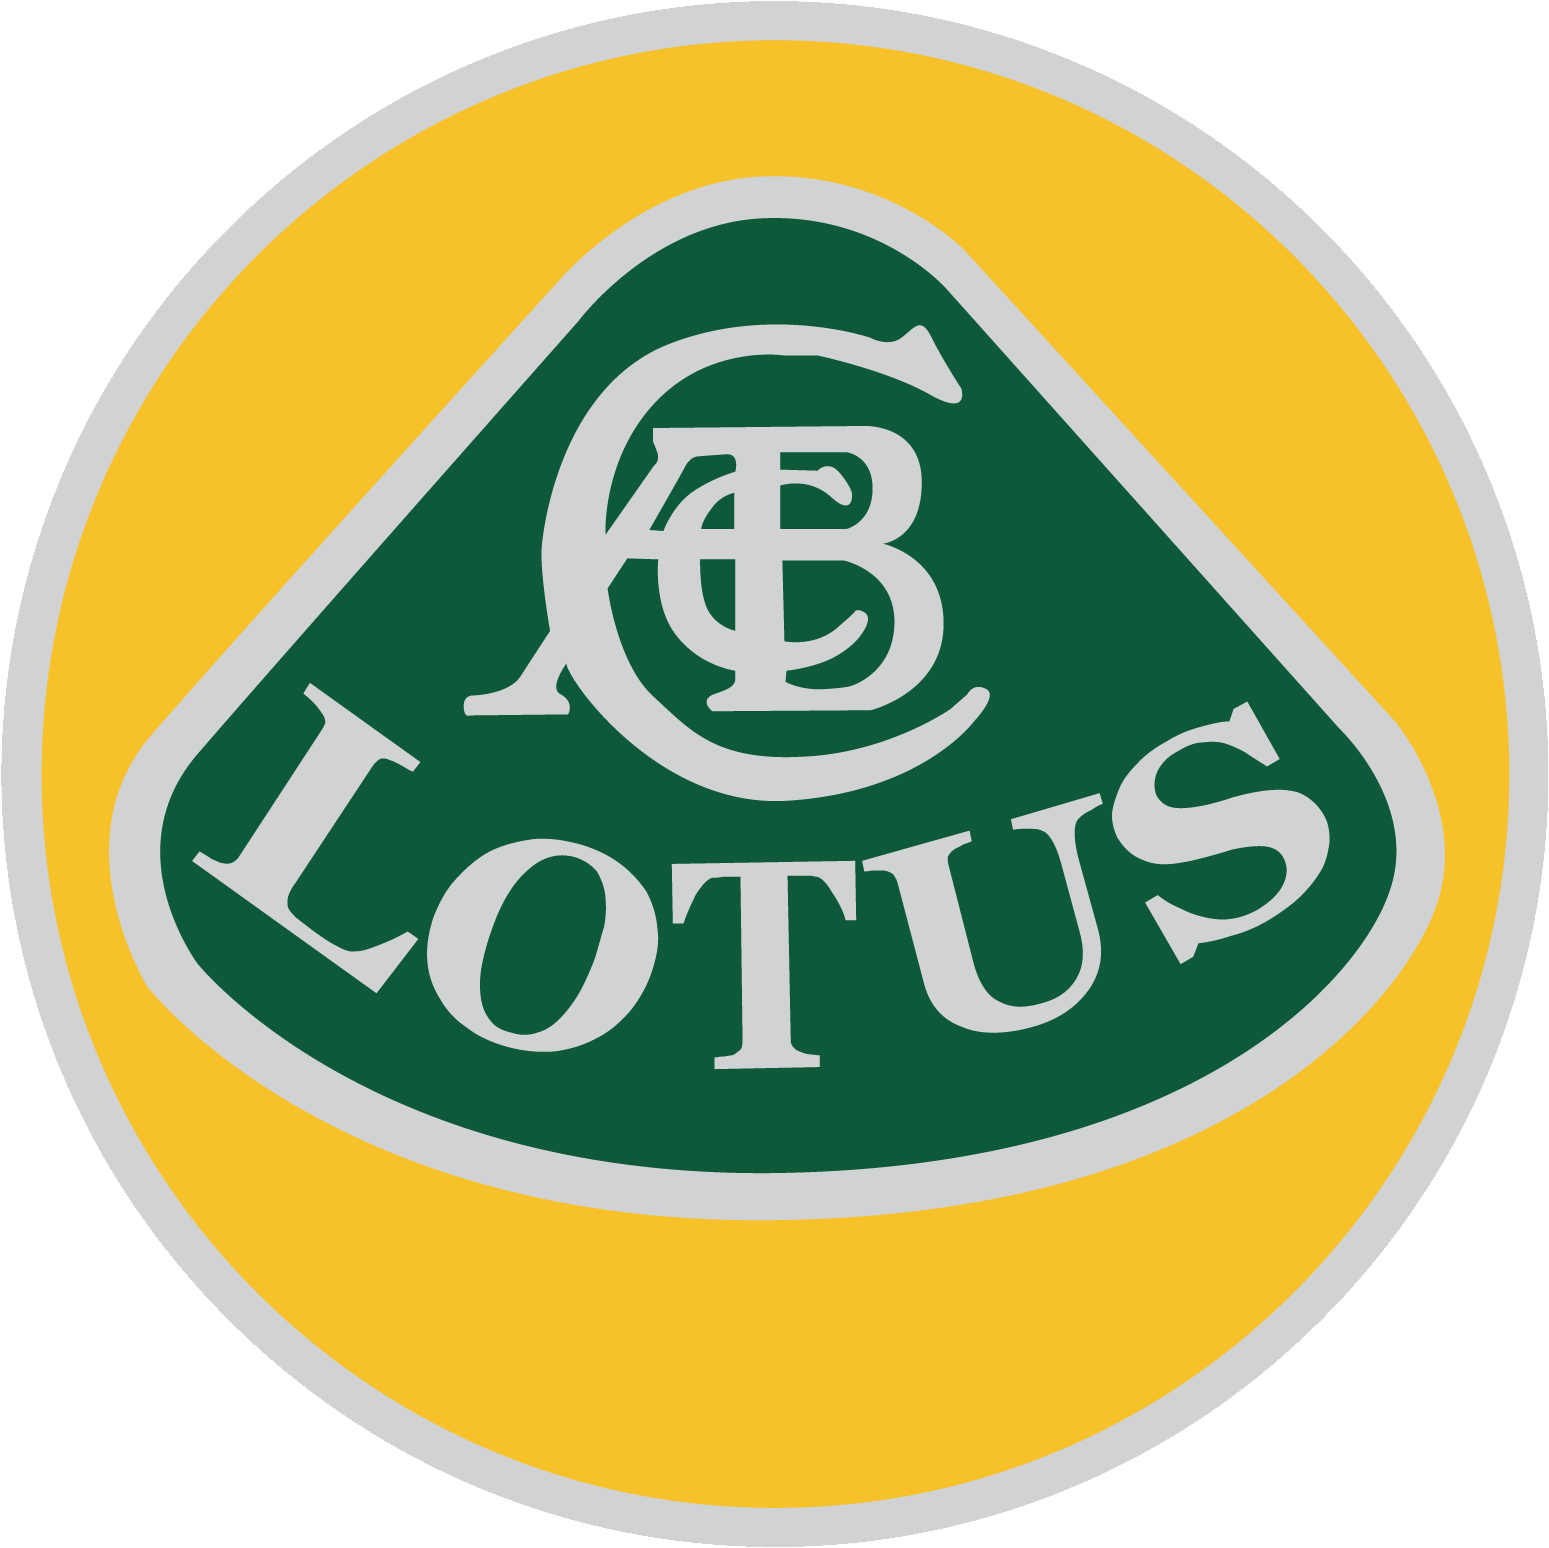 Logotipo do carro da Lotus